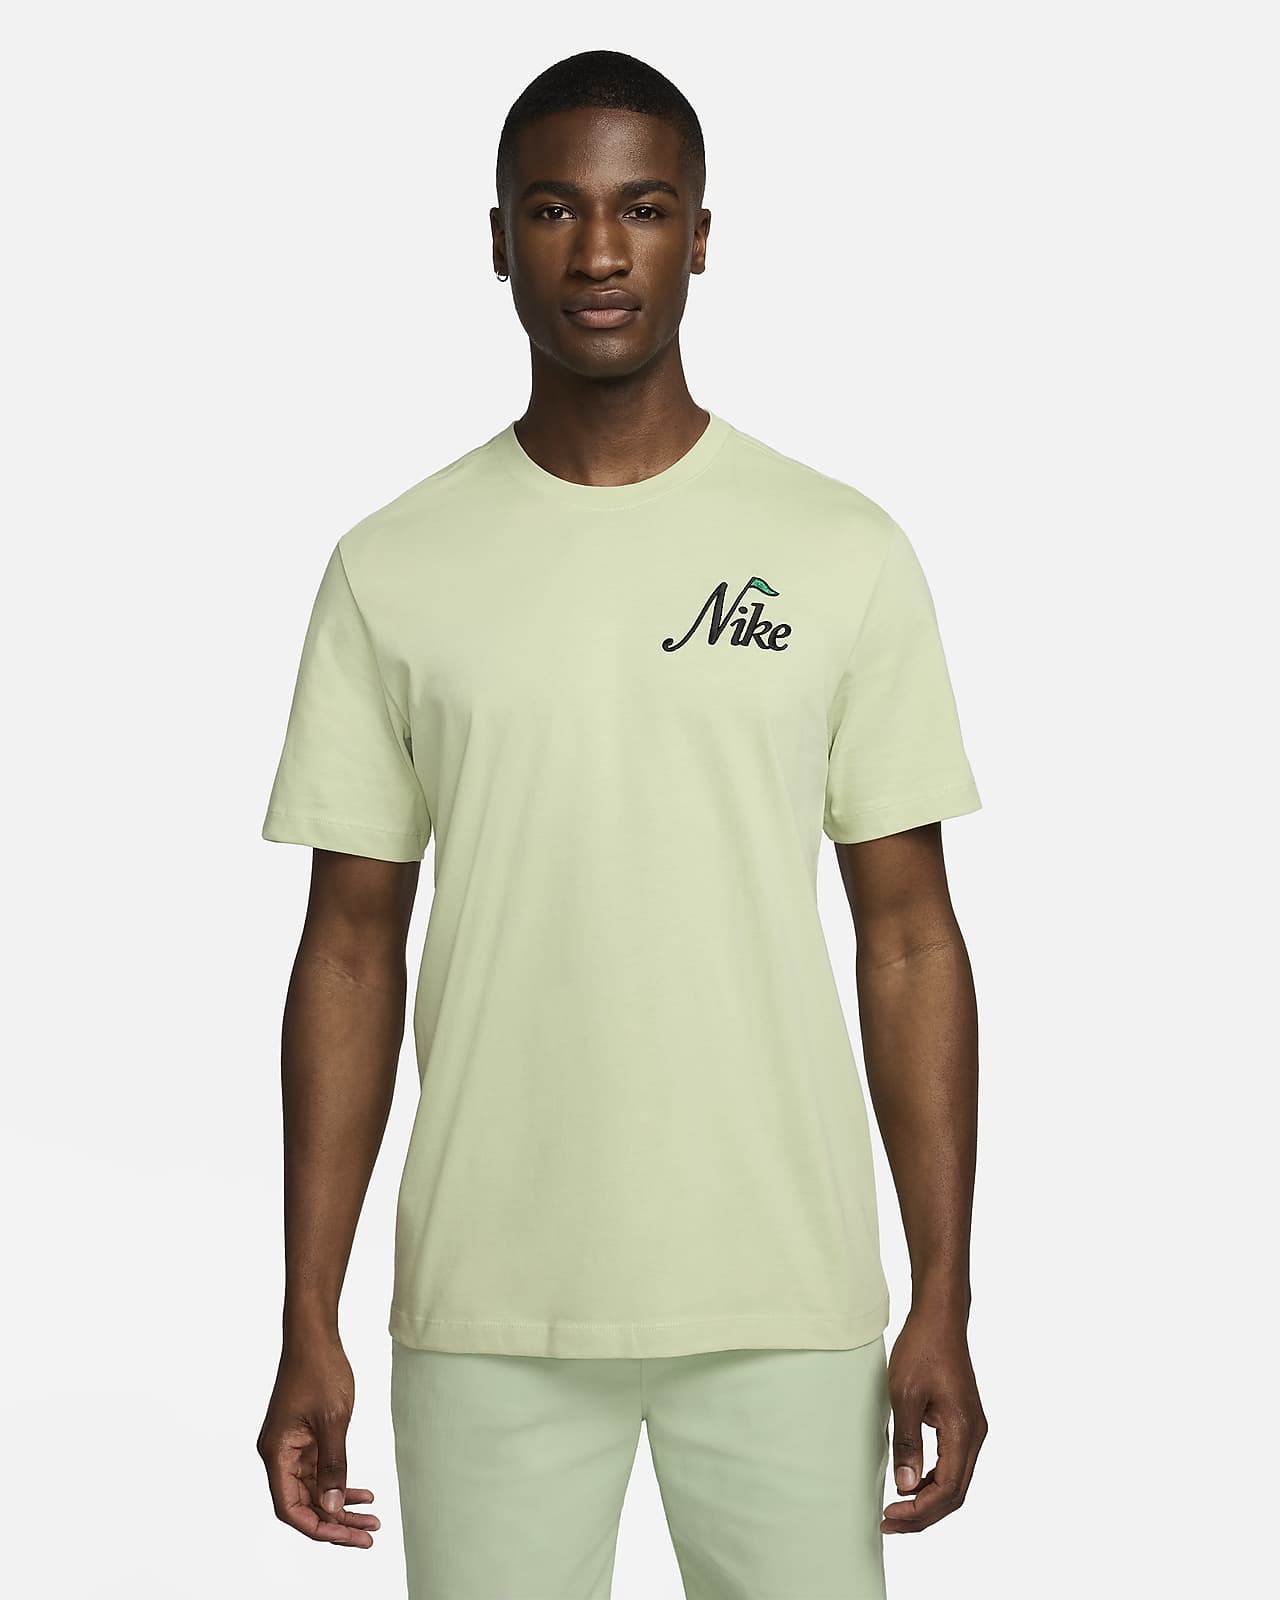 Golf-t-shirt Nike för män